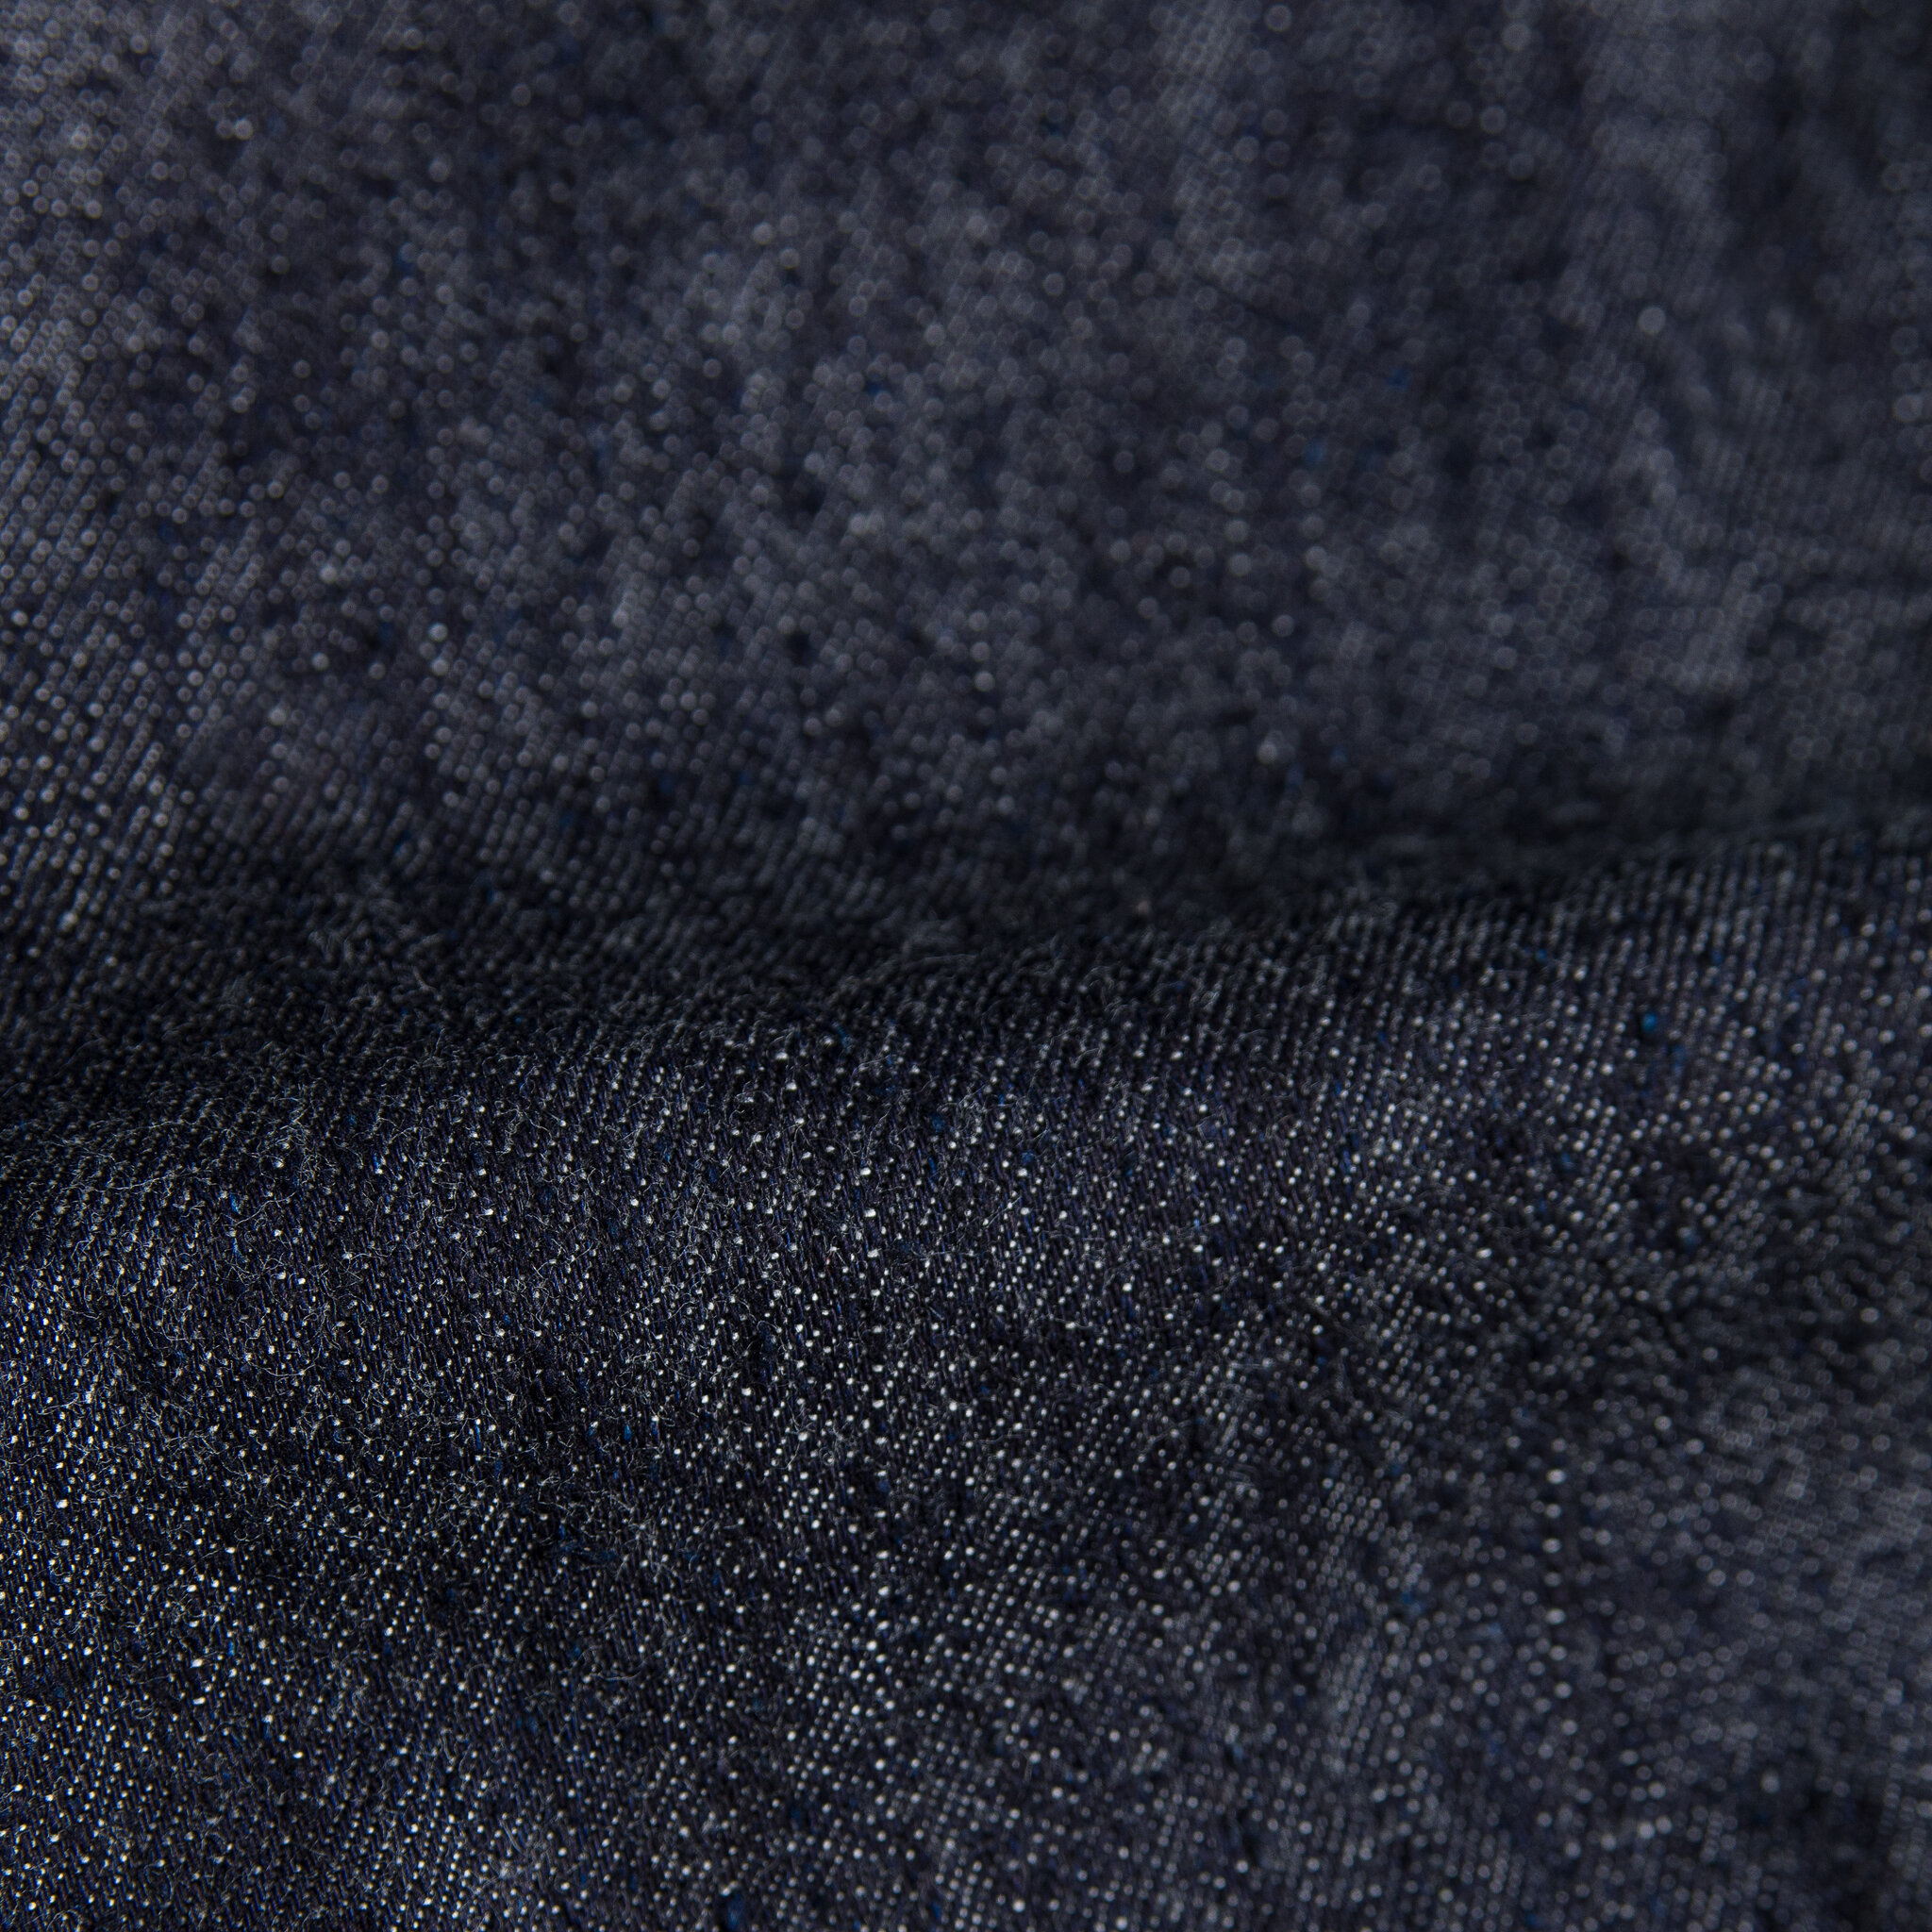  Easy Shirt - Slub Nep Rinsed Denim - fabric 